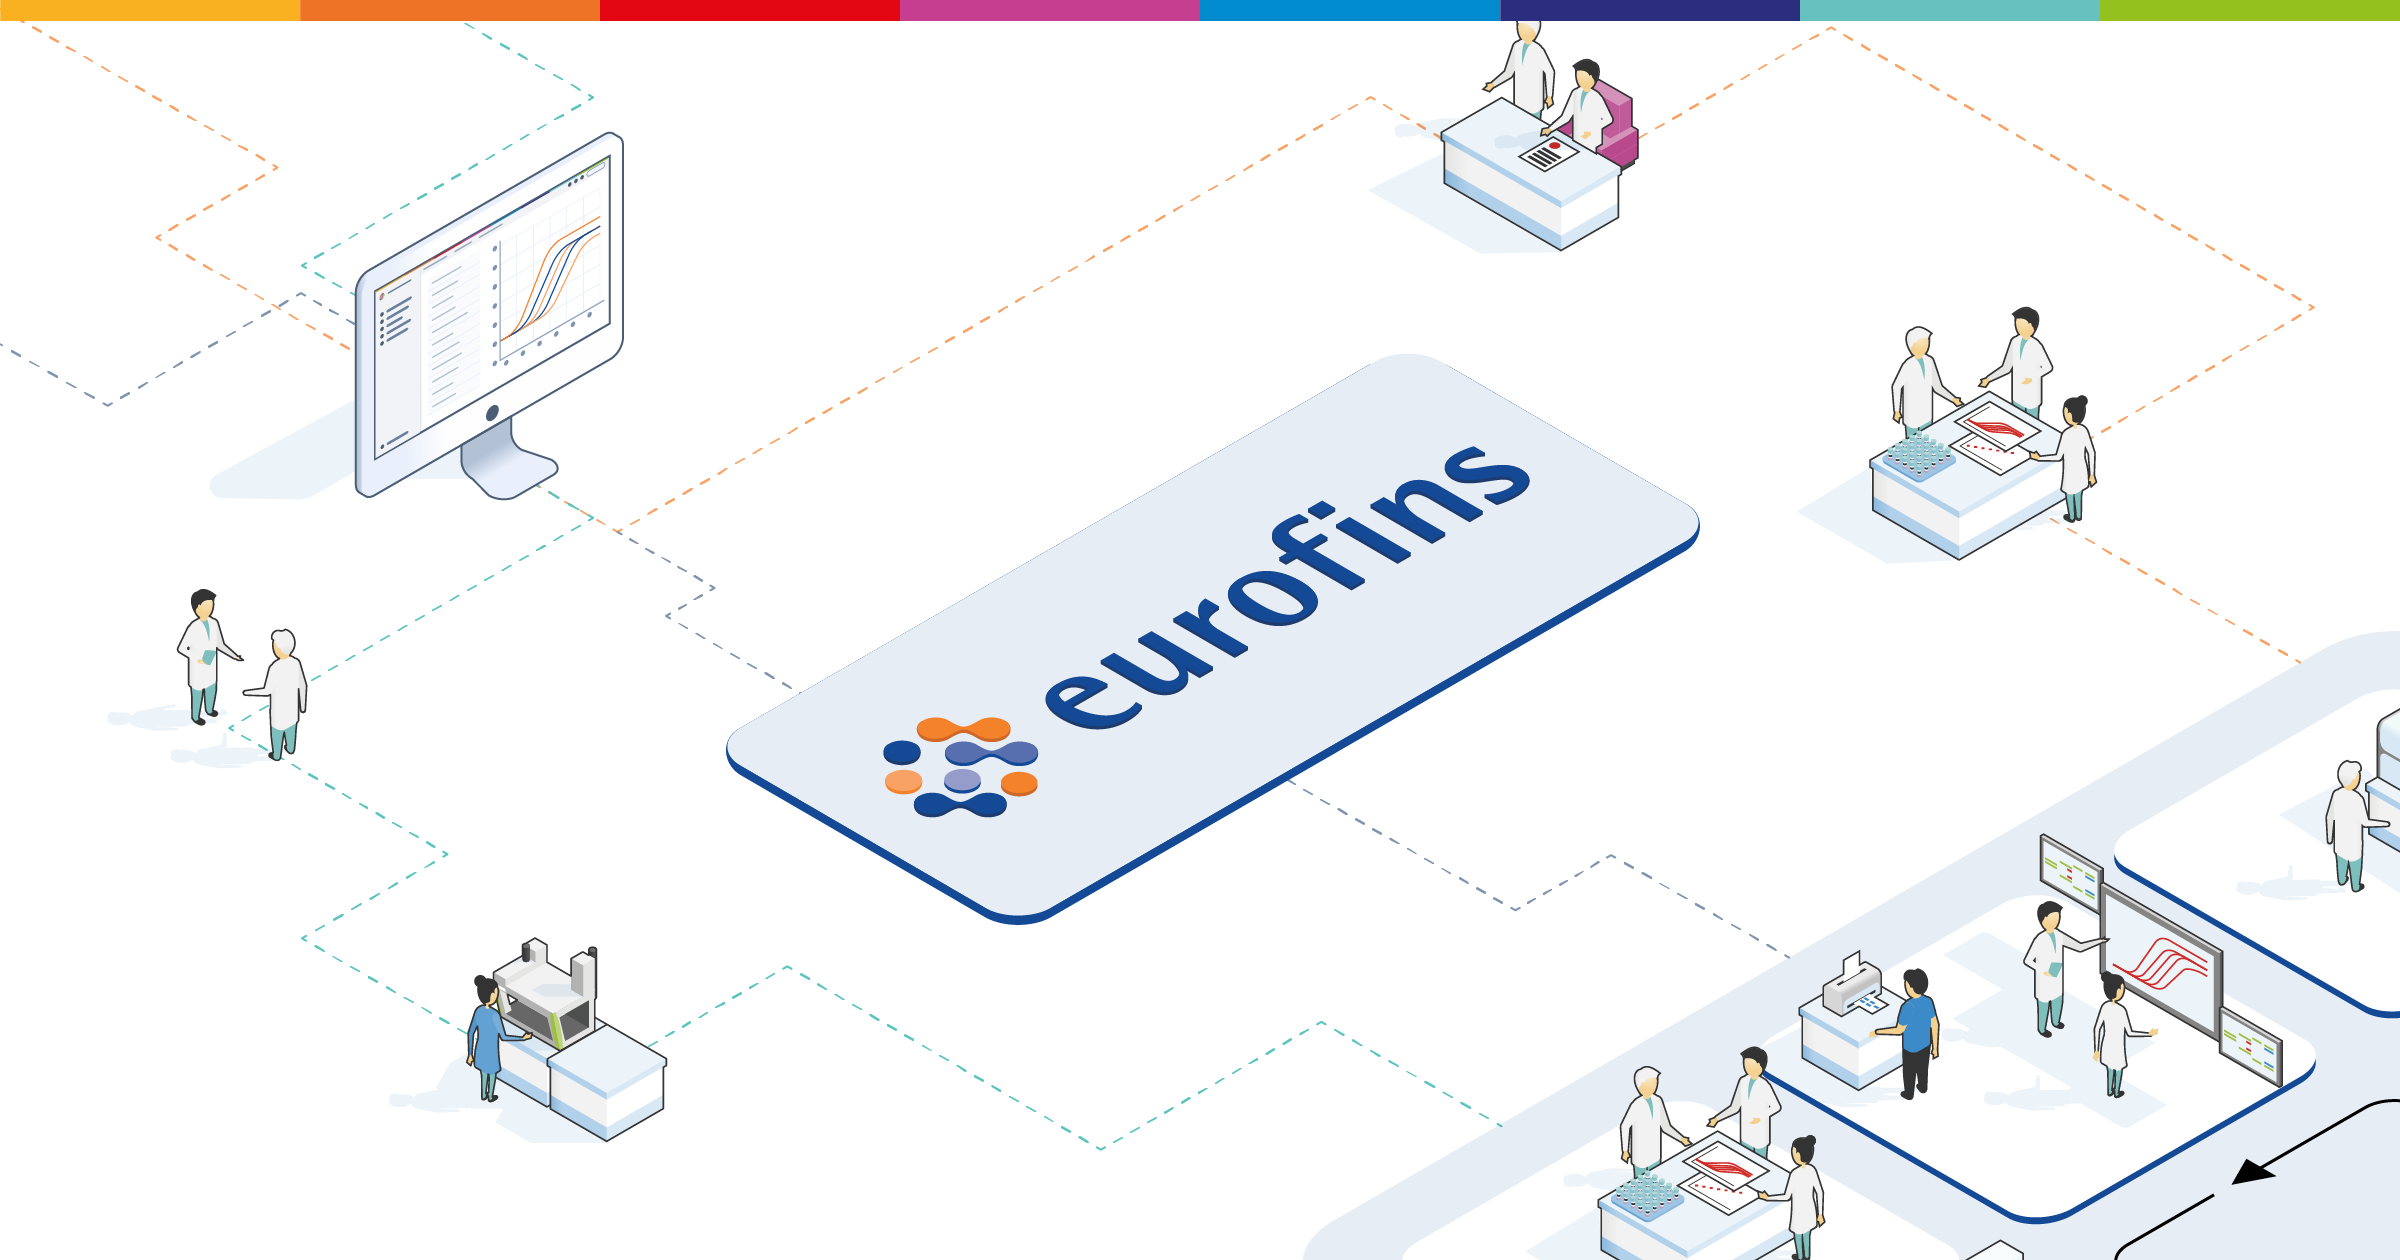 2019OKT03-Eurofins-OG-image-press-release@2x